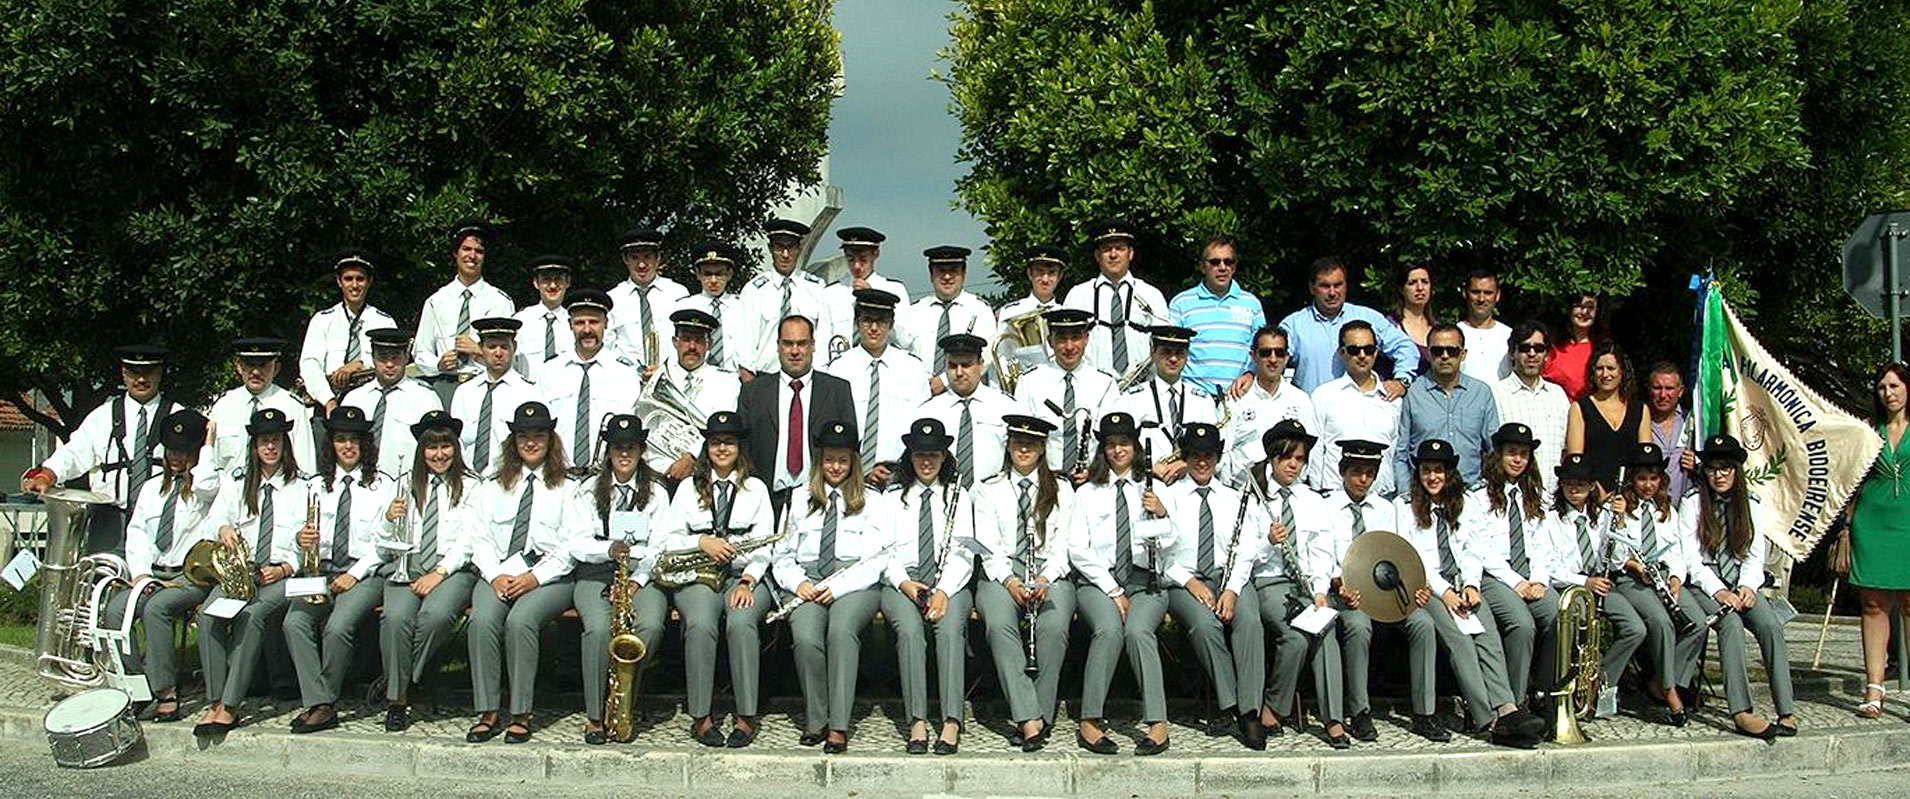 Associação Filarmónica Bidoeirense, Bidoeira de Cima, Leiria, AFILBI